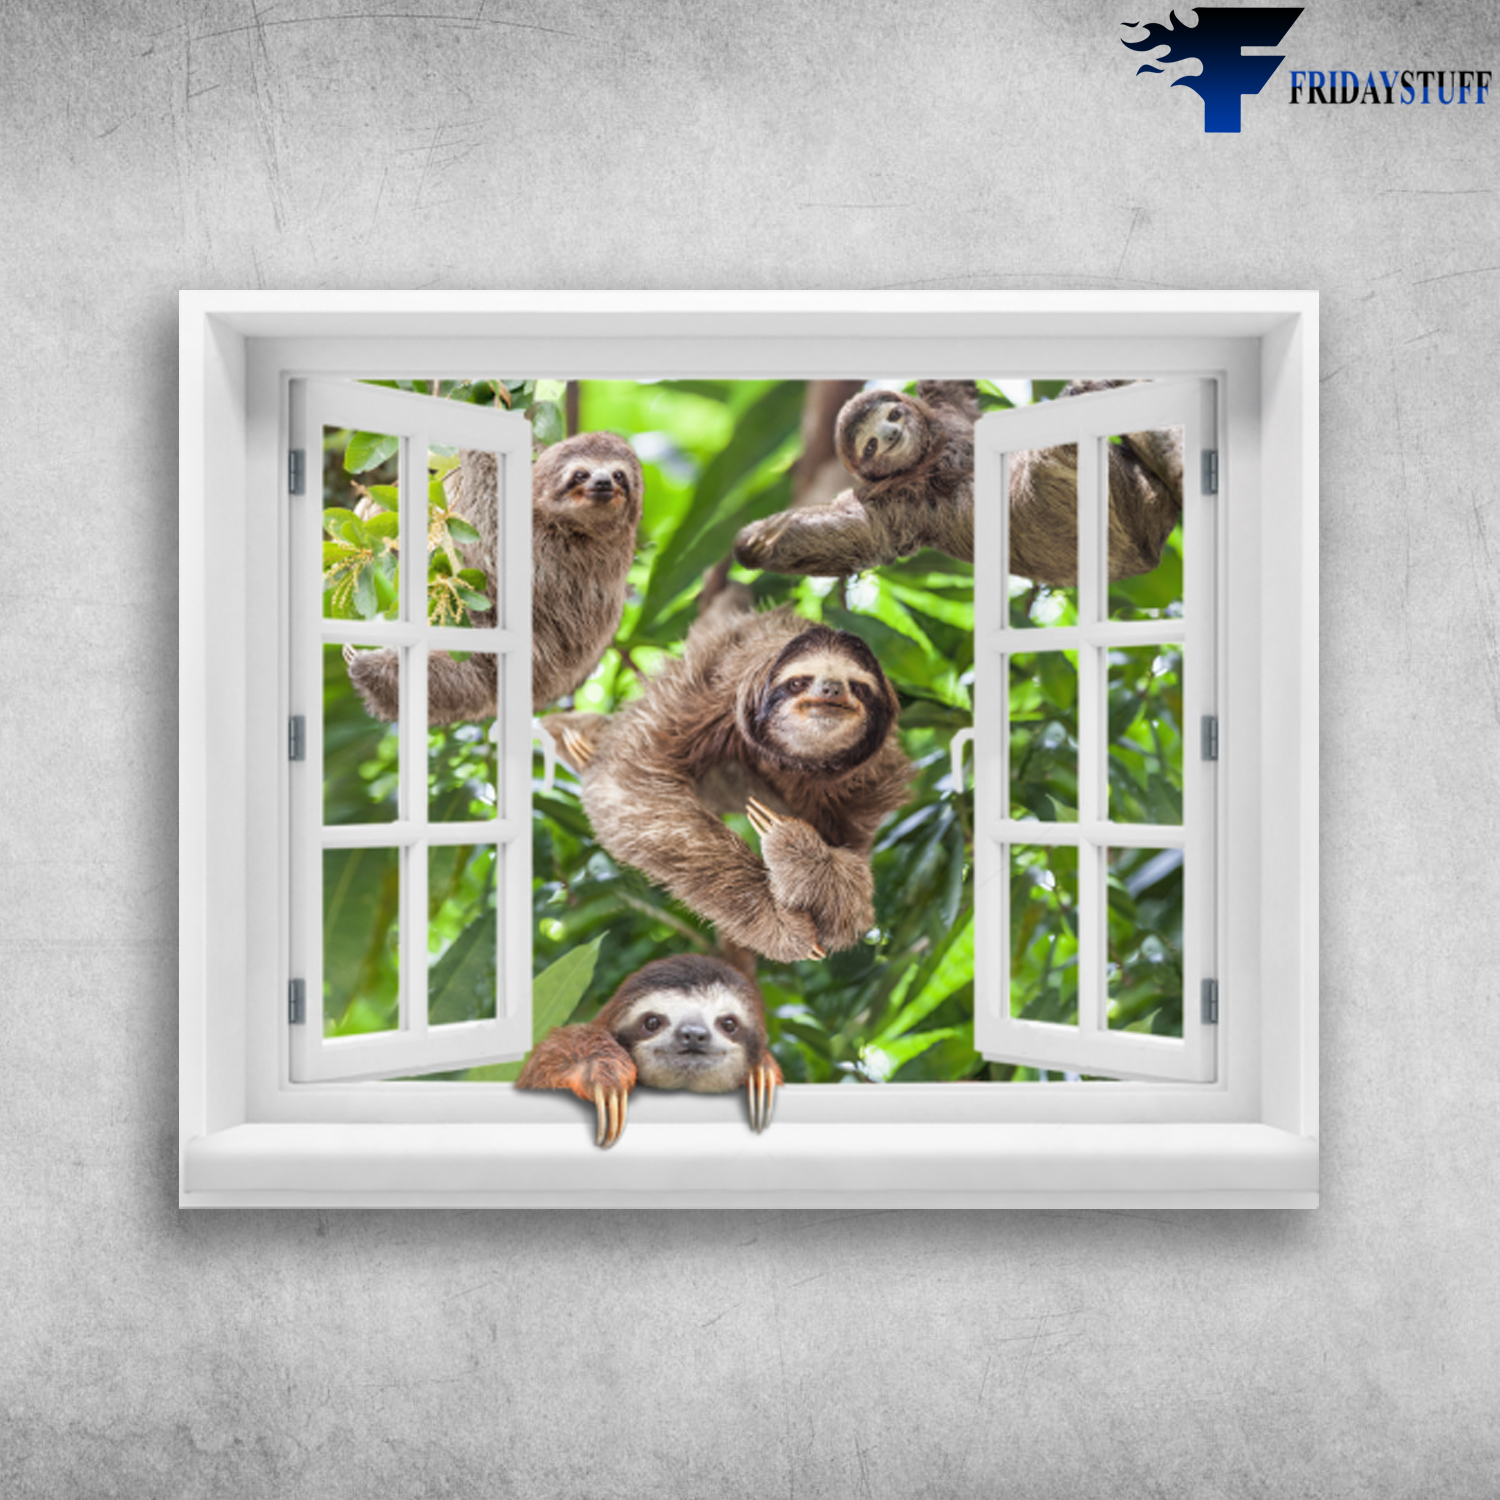 Cute Sloths Clim The Tree Through The Windows